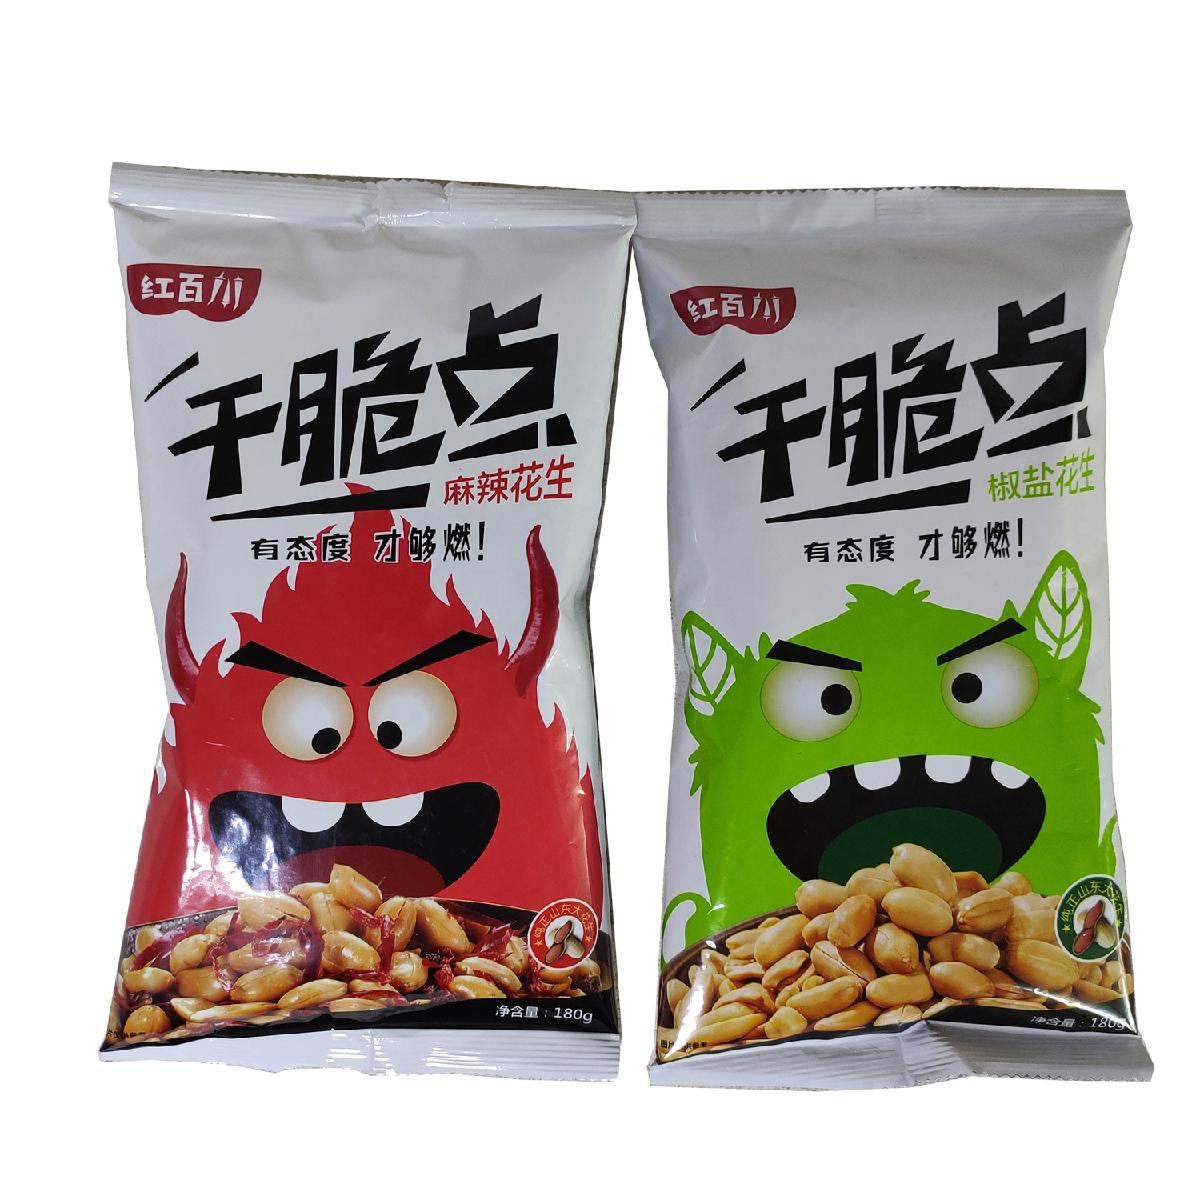 Tasty Snacks Ground Nut Peanuts Wholesale Salted Peanuts,China price ...